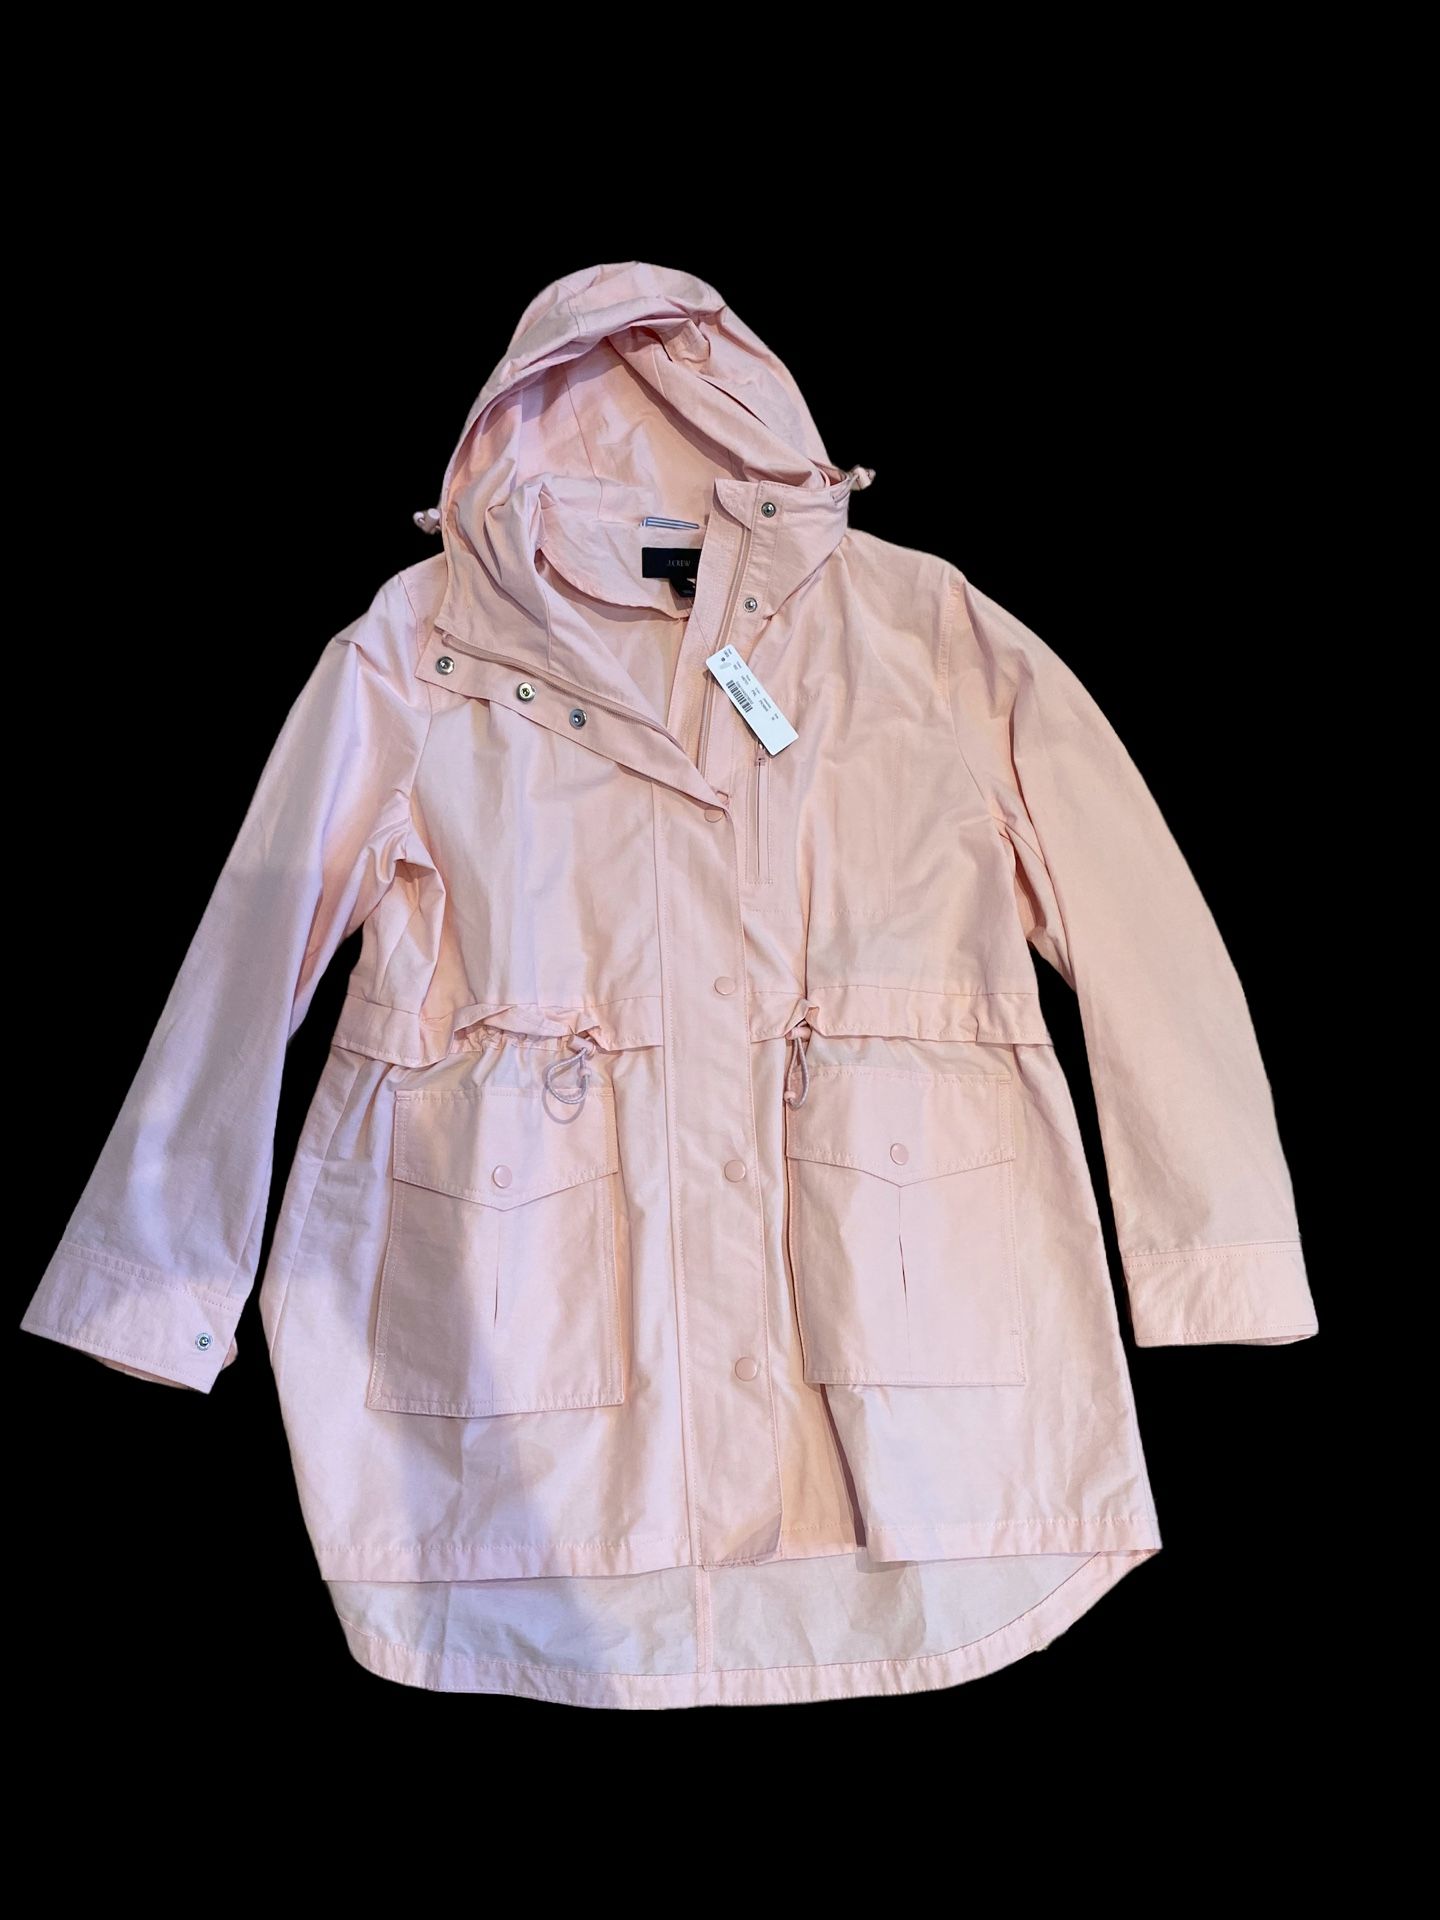 NWT J Crew Women’s pink rain coat size medium